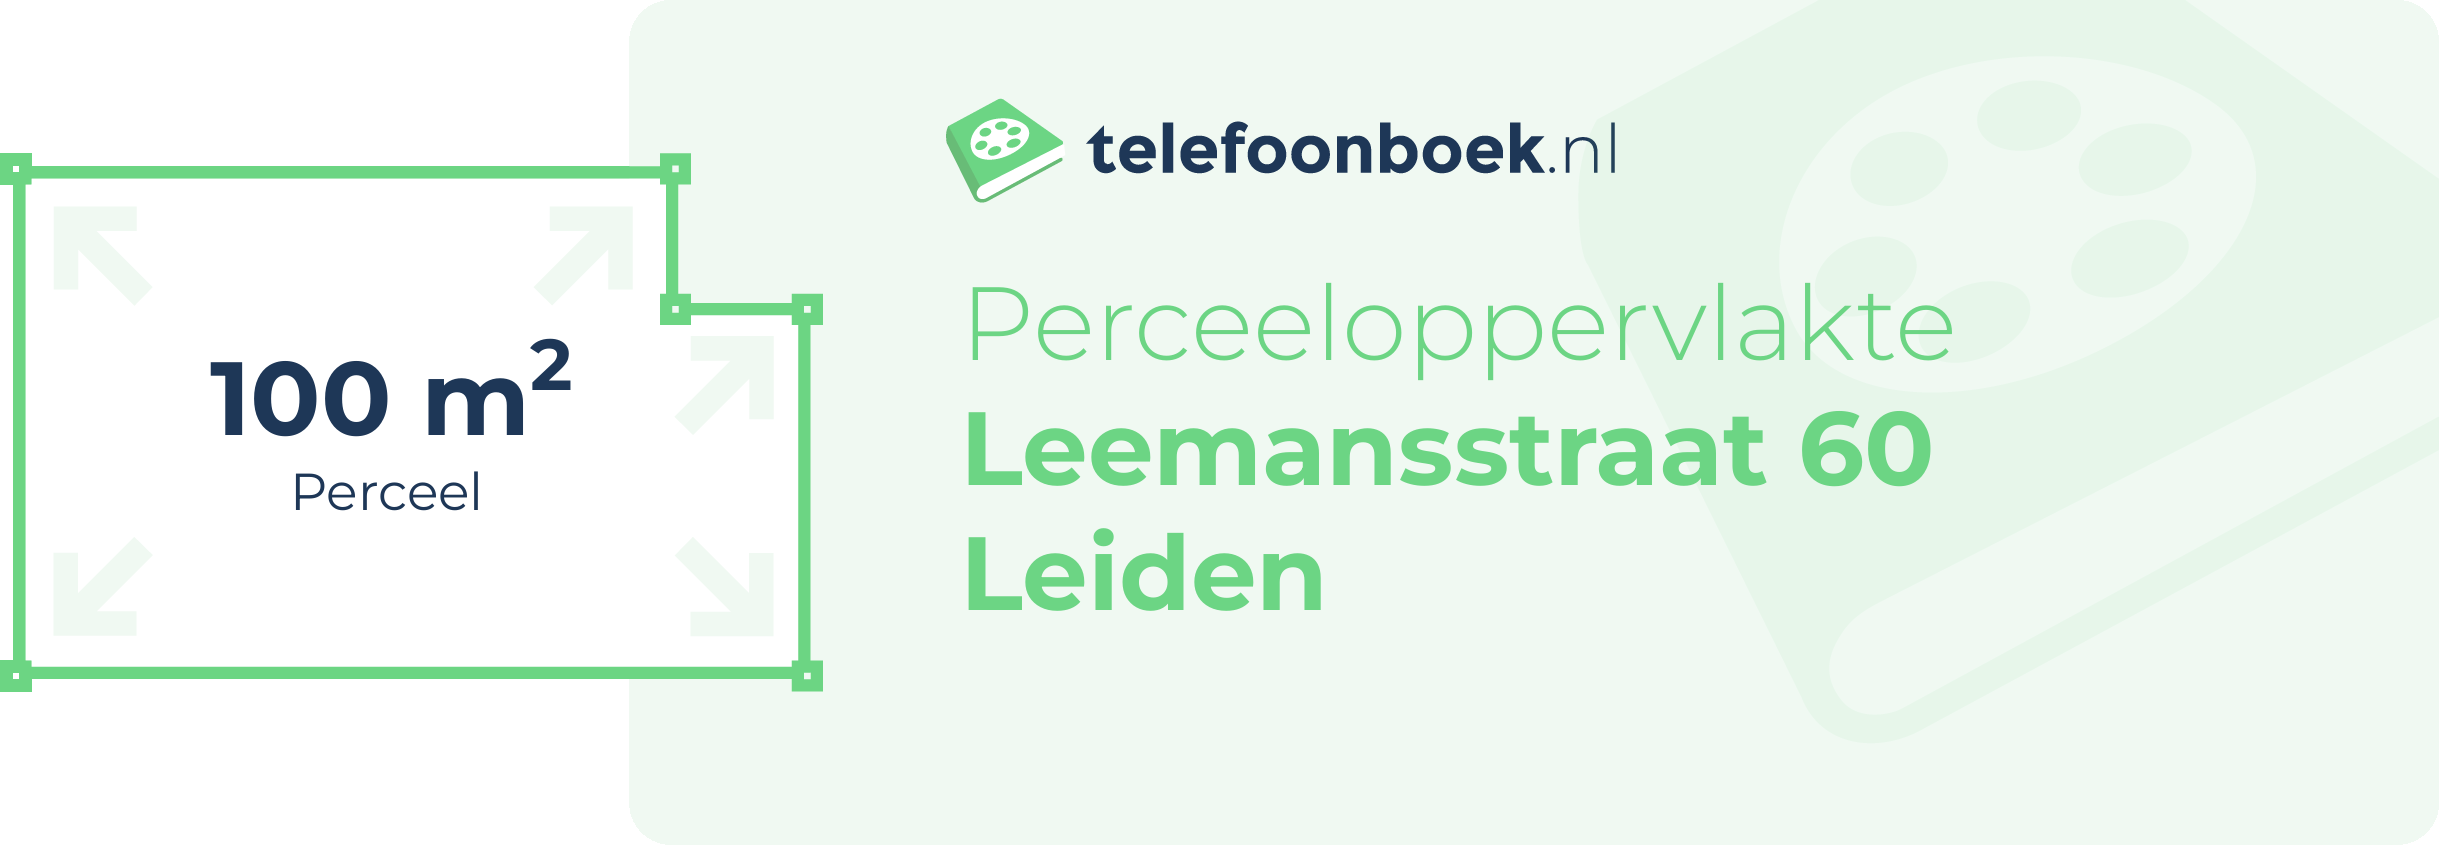 Perceeloppervlakte Leemansstraat 60 Leiden